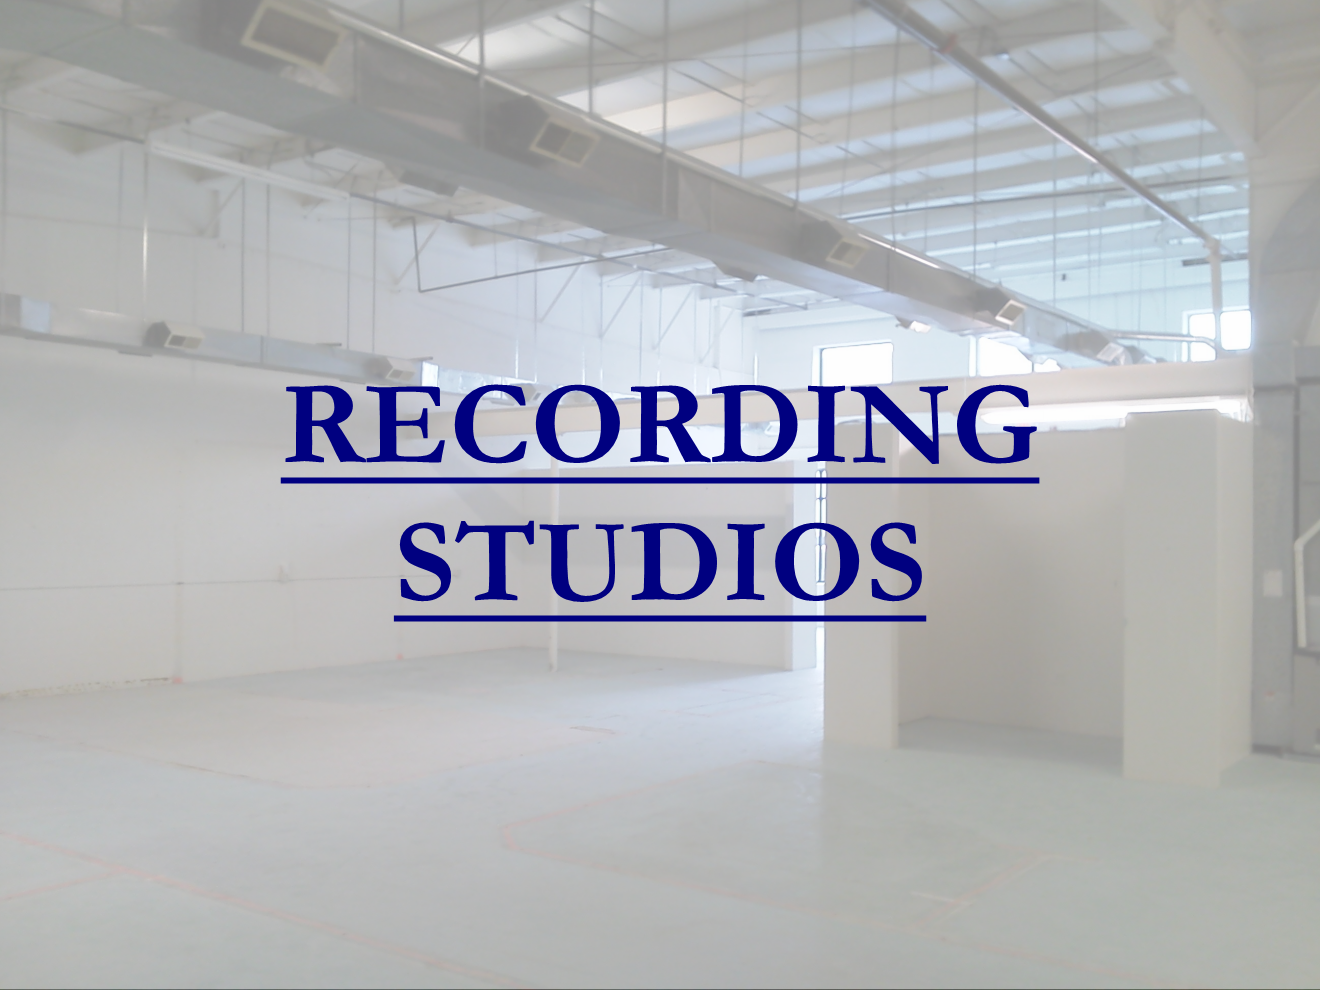 Studio - Arktx, CRTV Leesburg - text.png